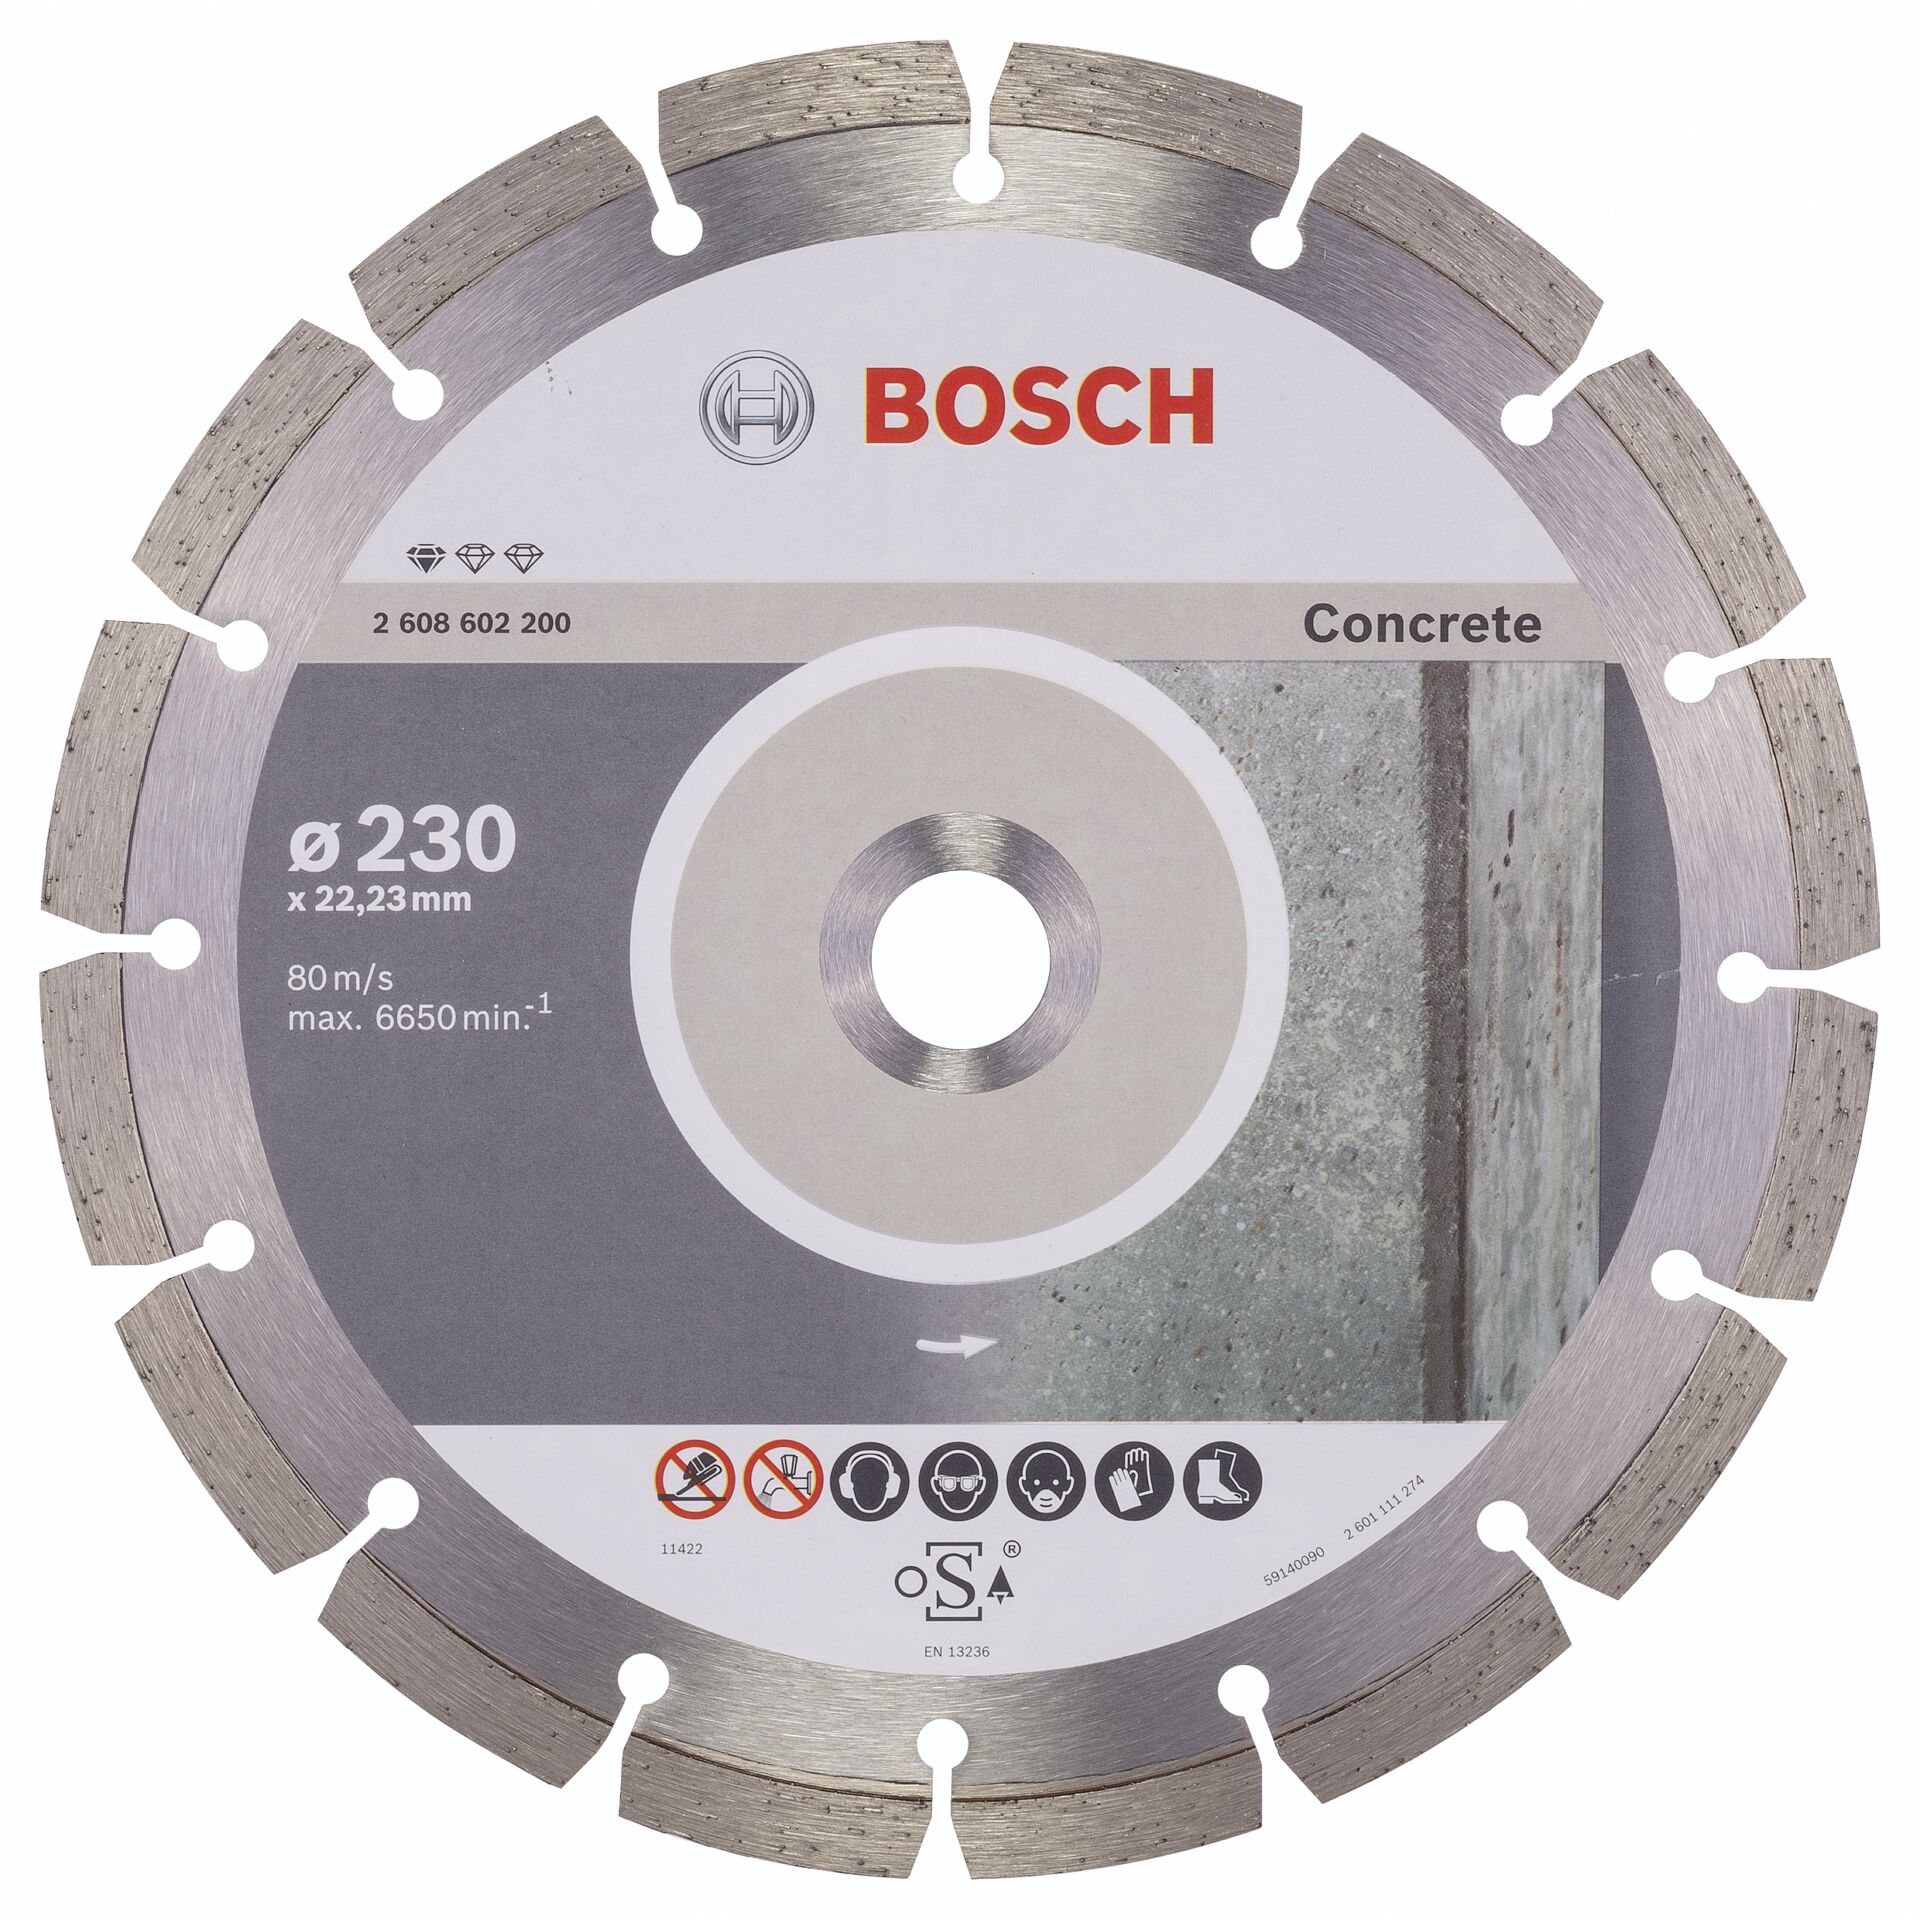 Bosch DIA-TS 230x22,23 Standard For Concrete